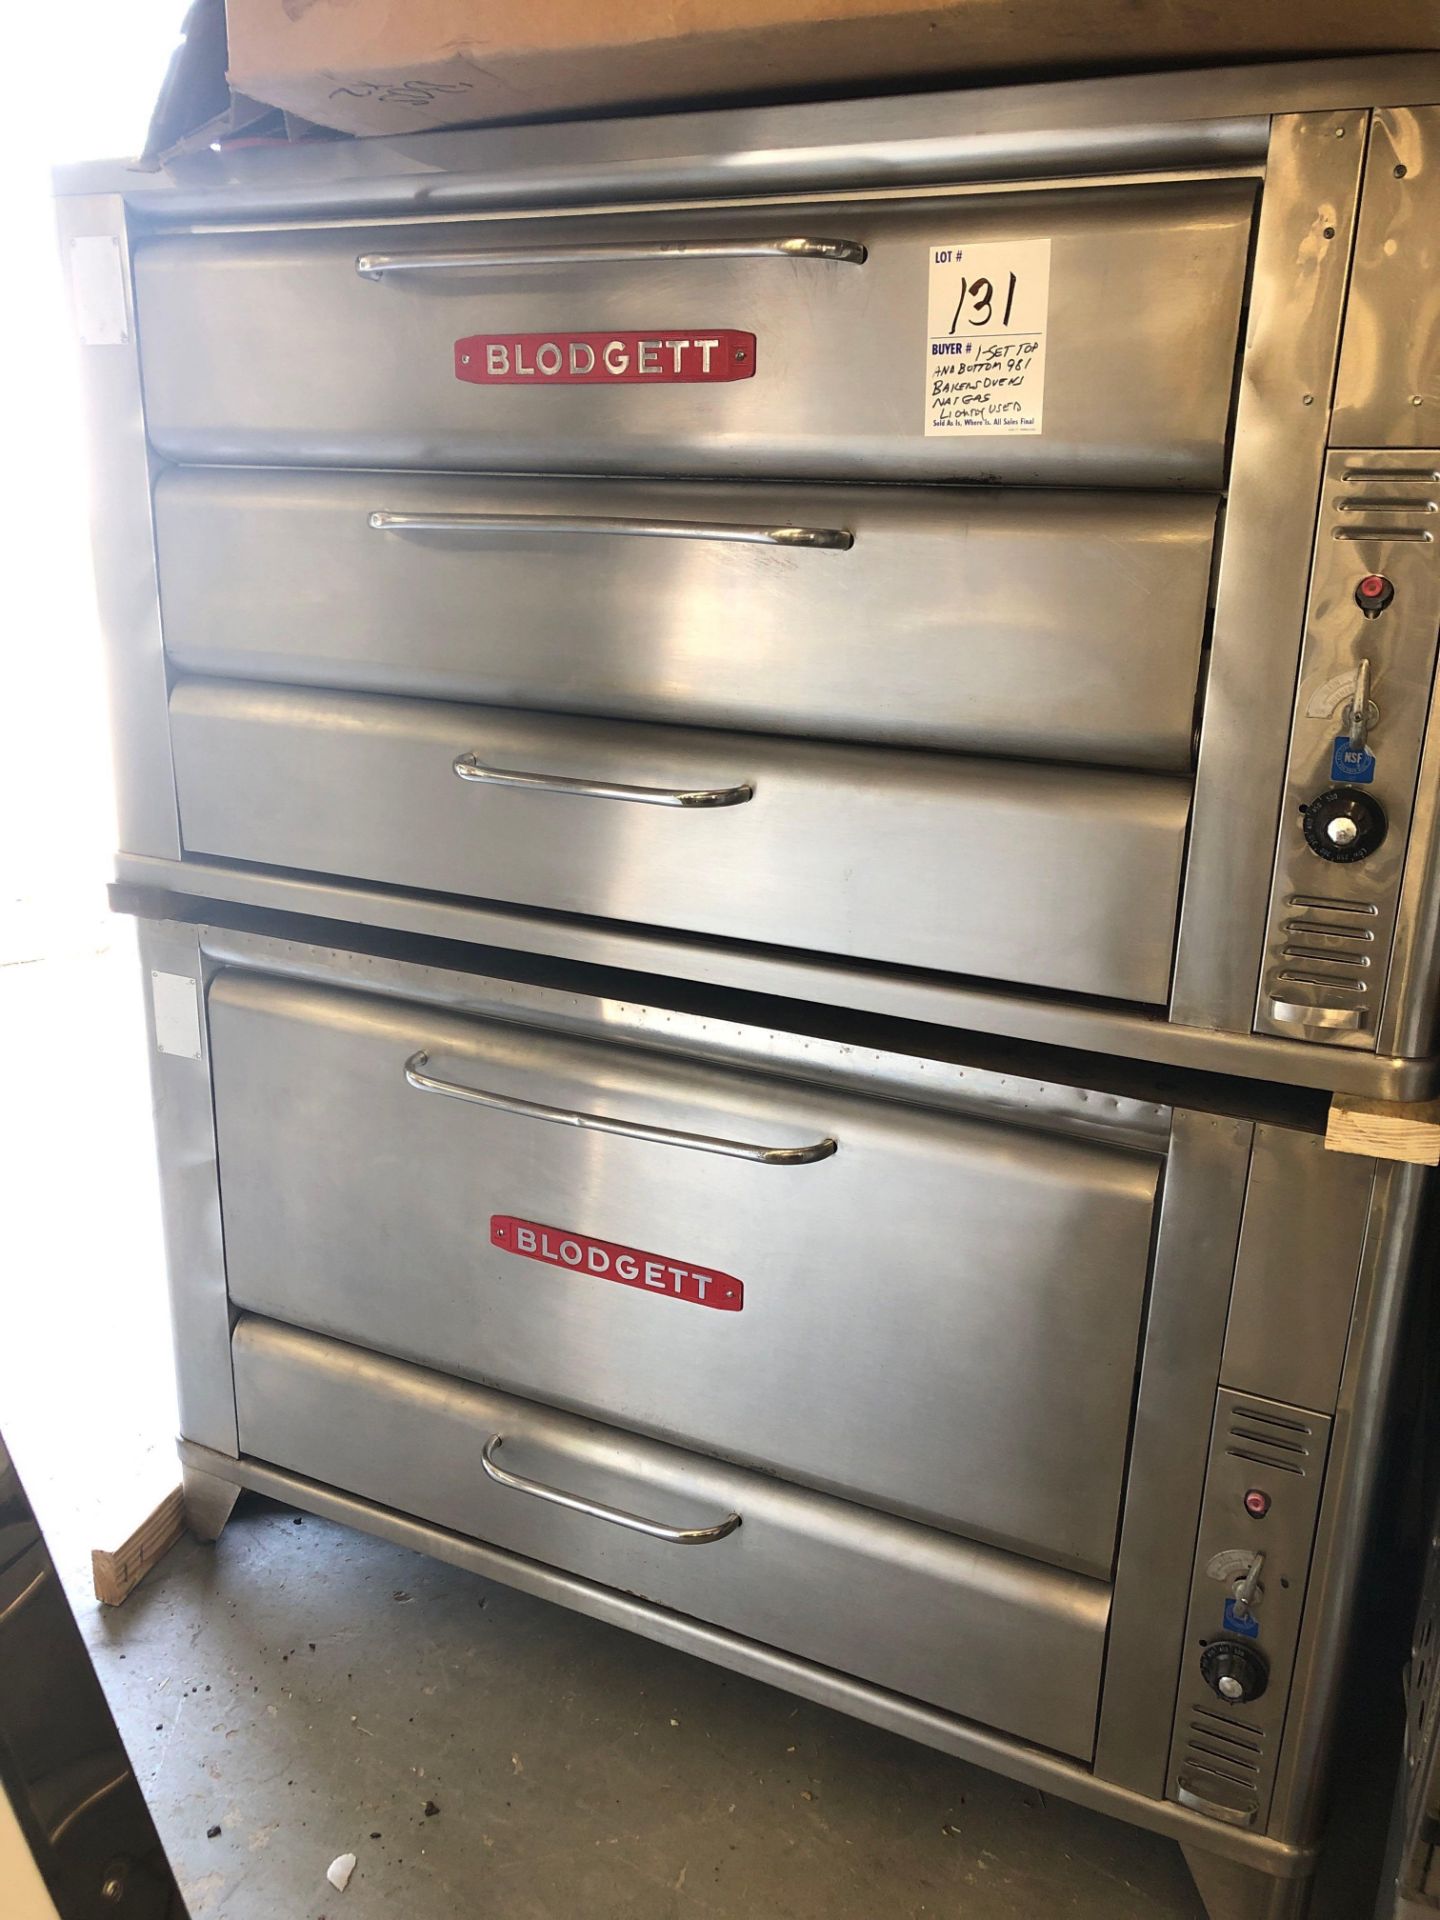 Blodgett Baker's ovens